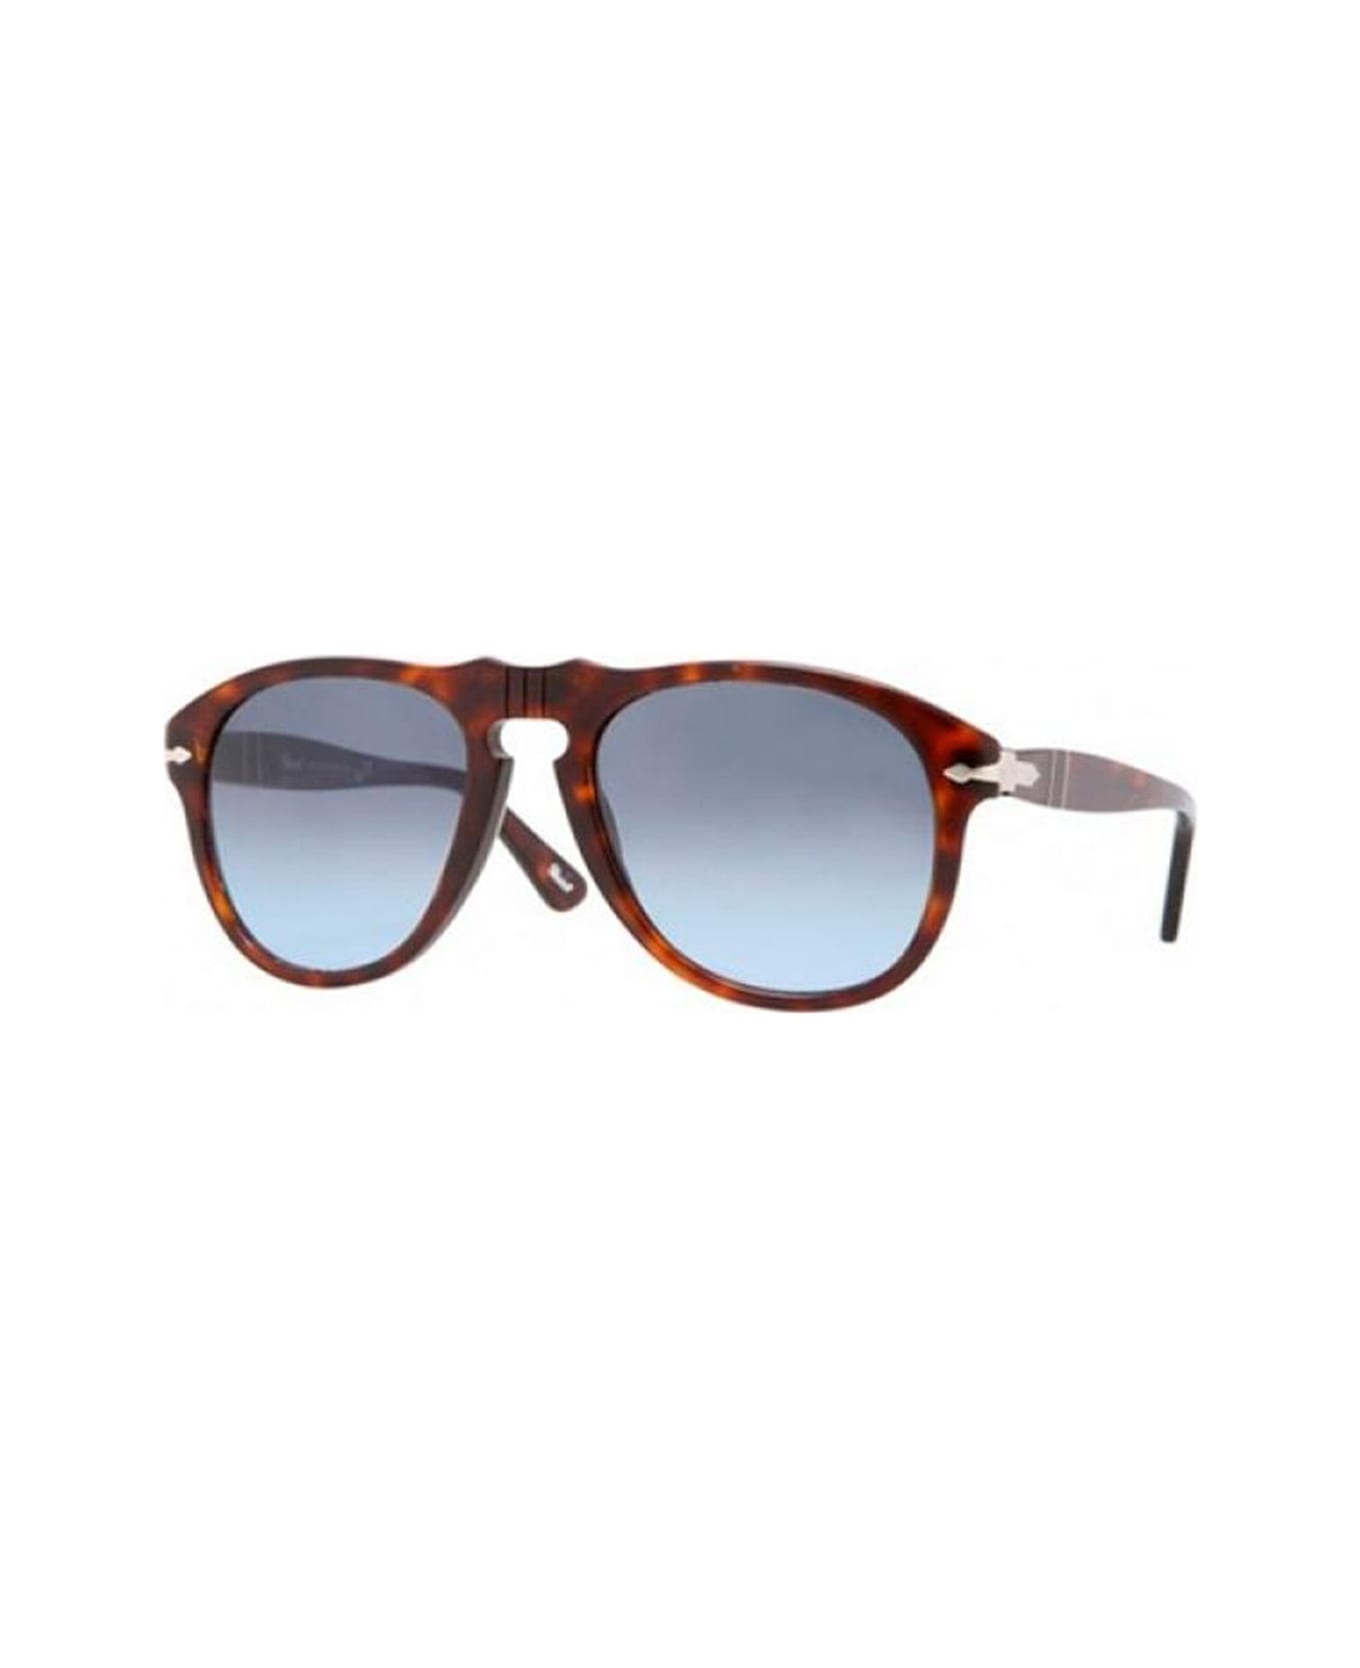 Persol Po0649 Sunglasses - Marrone サングラス